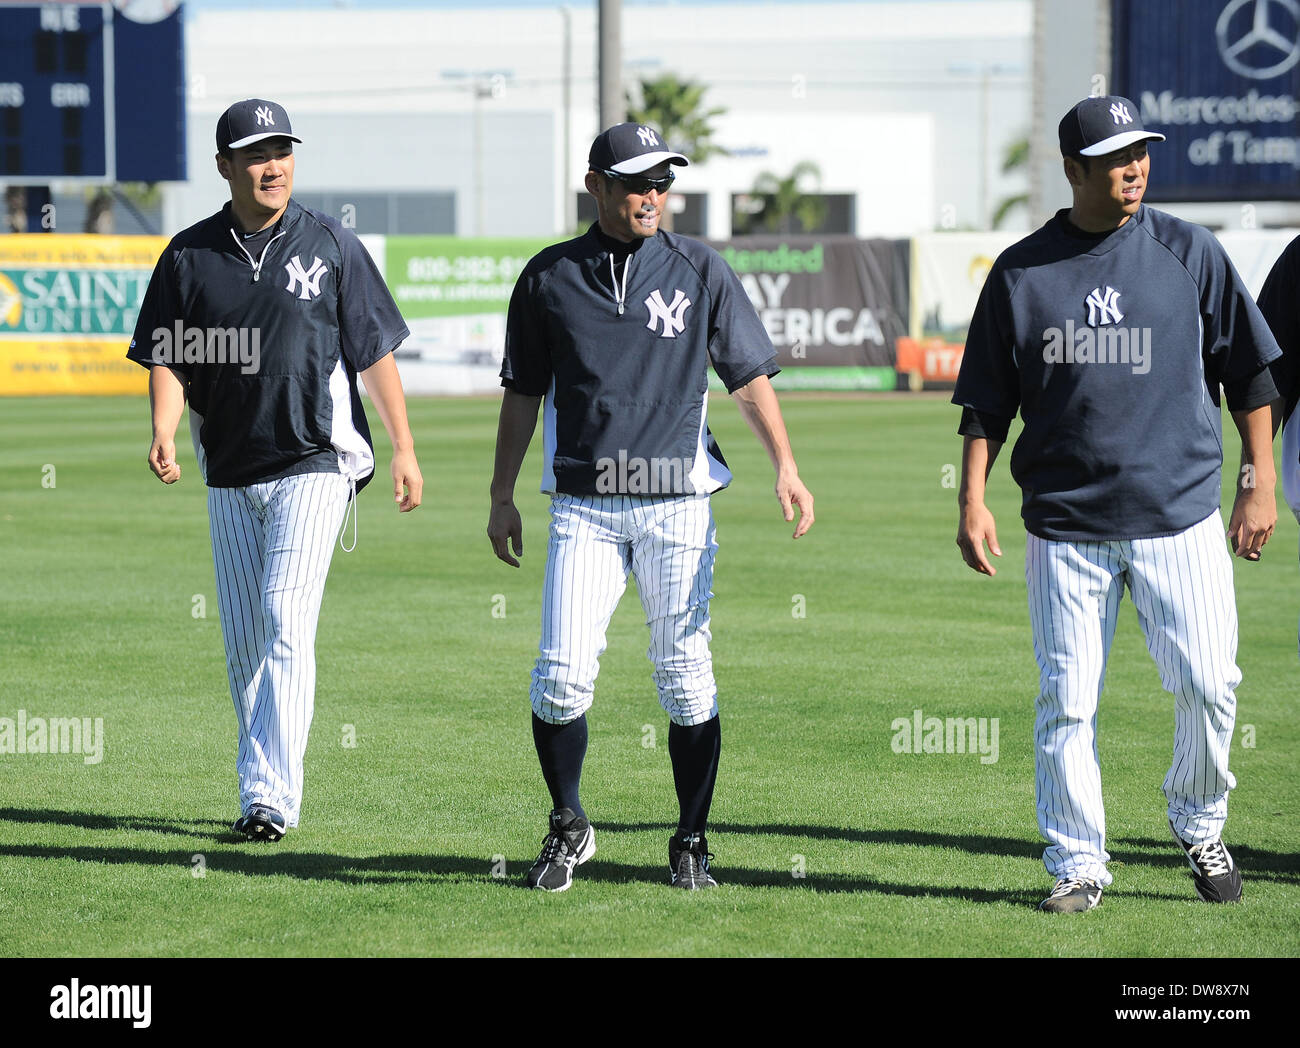 New York Yankees' Masahiro Tanaka 'treasured' playing with Ichiro